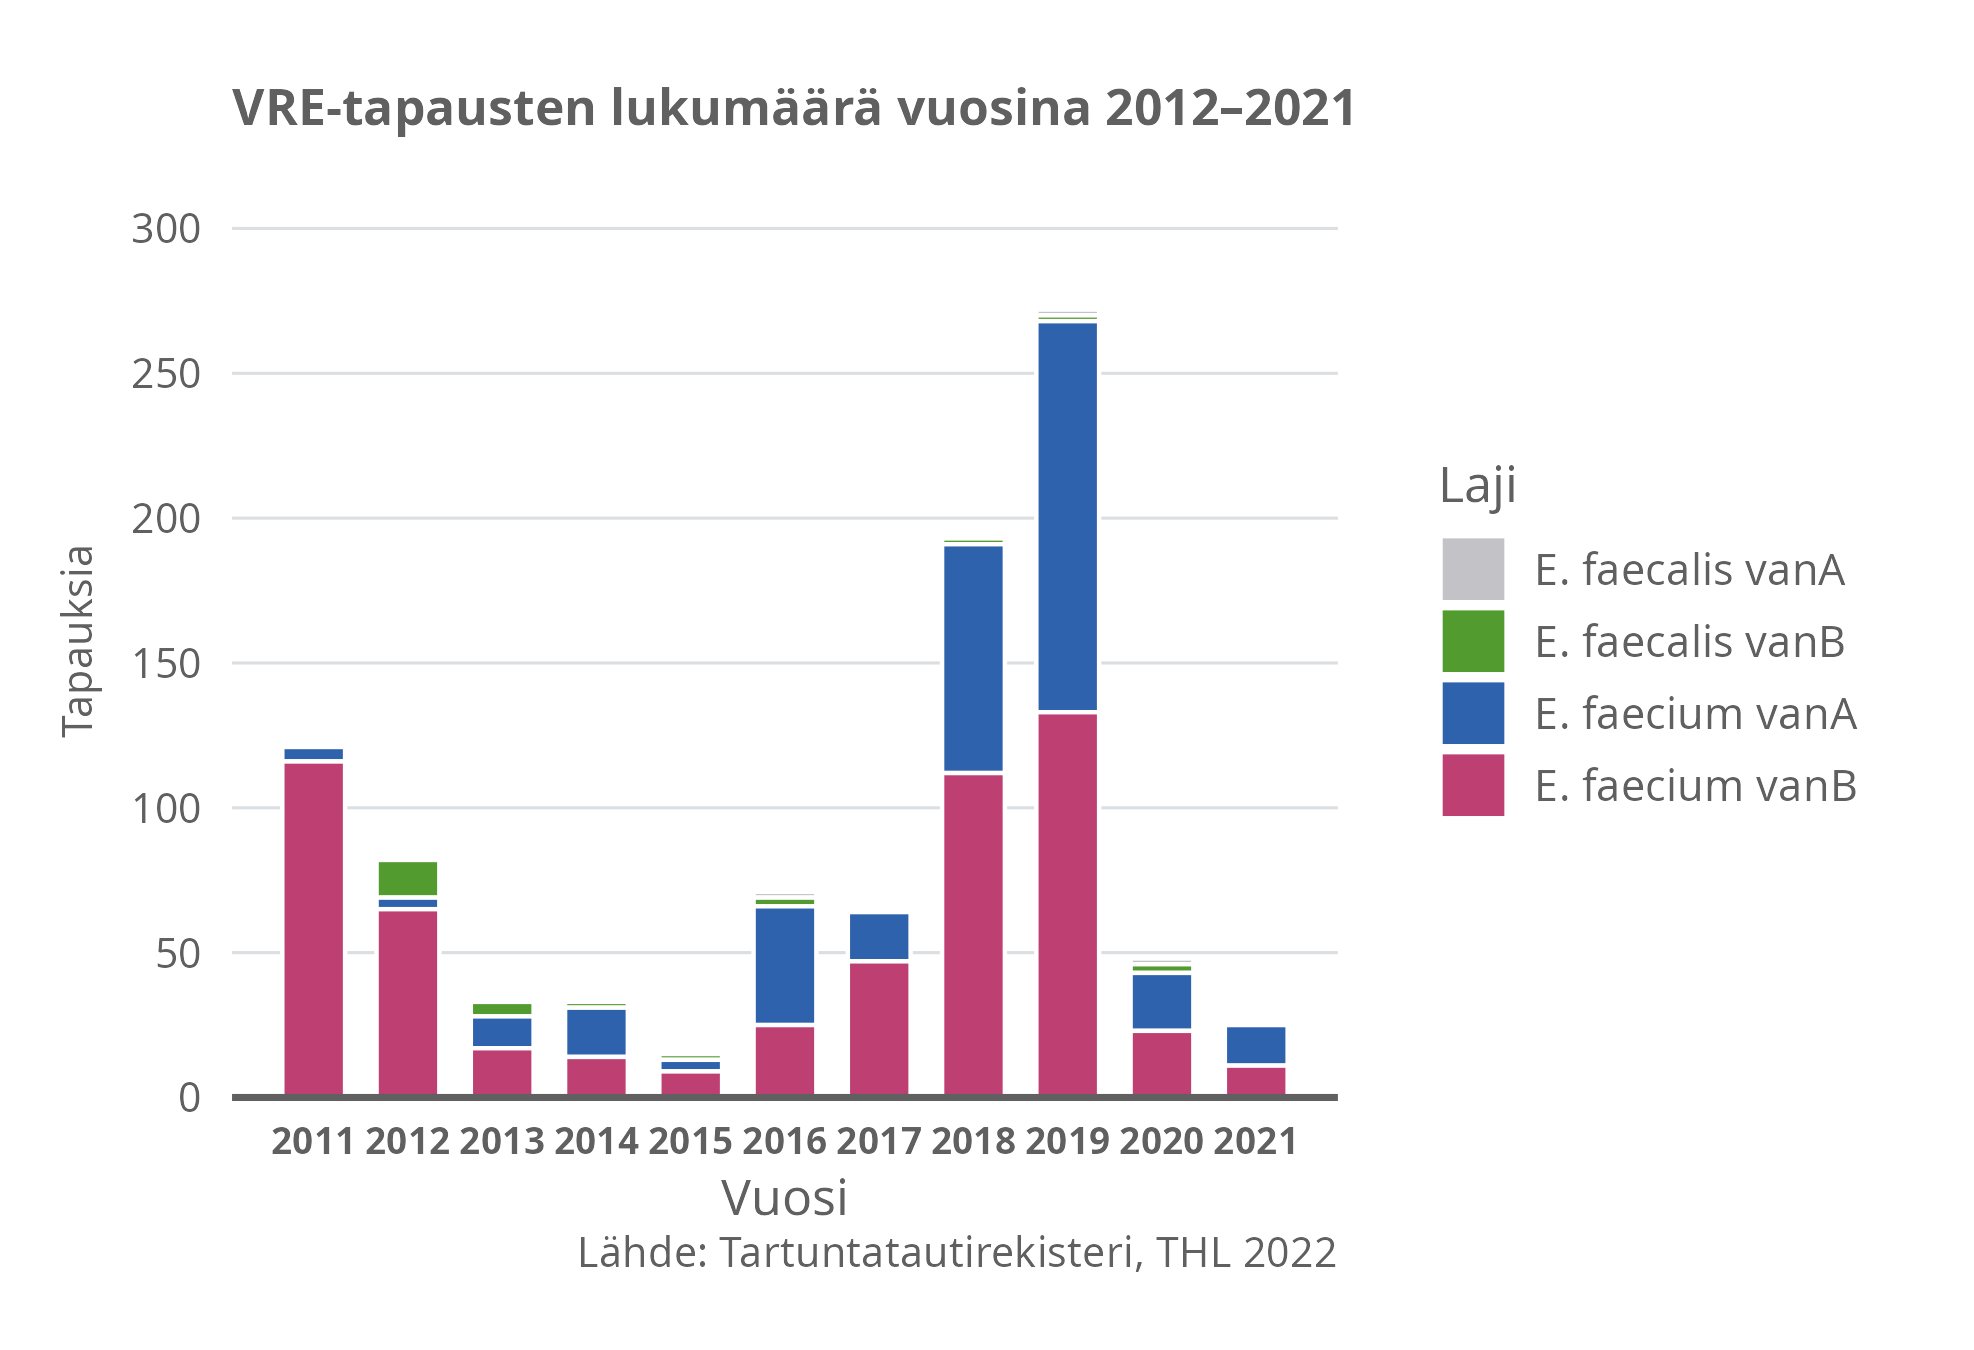 VRE-tapausten lukumäärä vuosina 2012-2021.